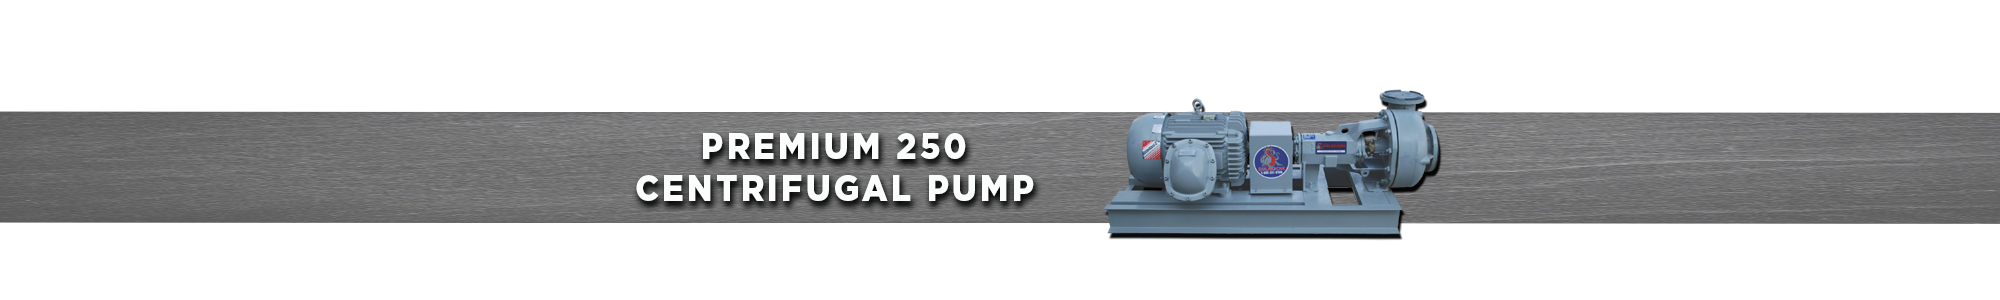 Premium 250 Centrifugal Pump